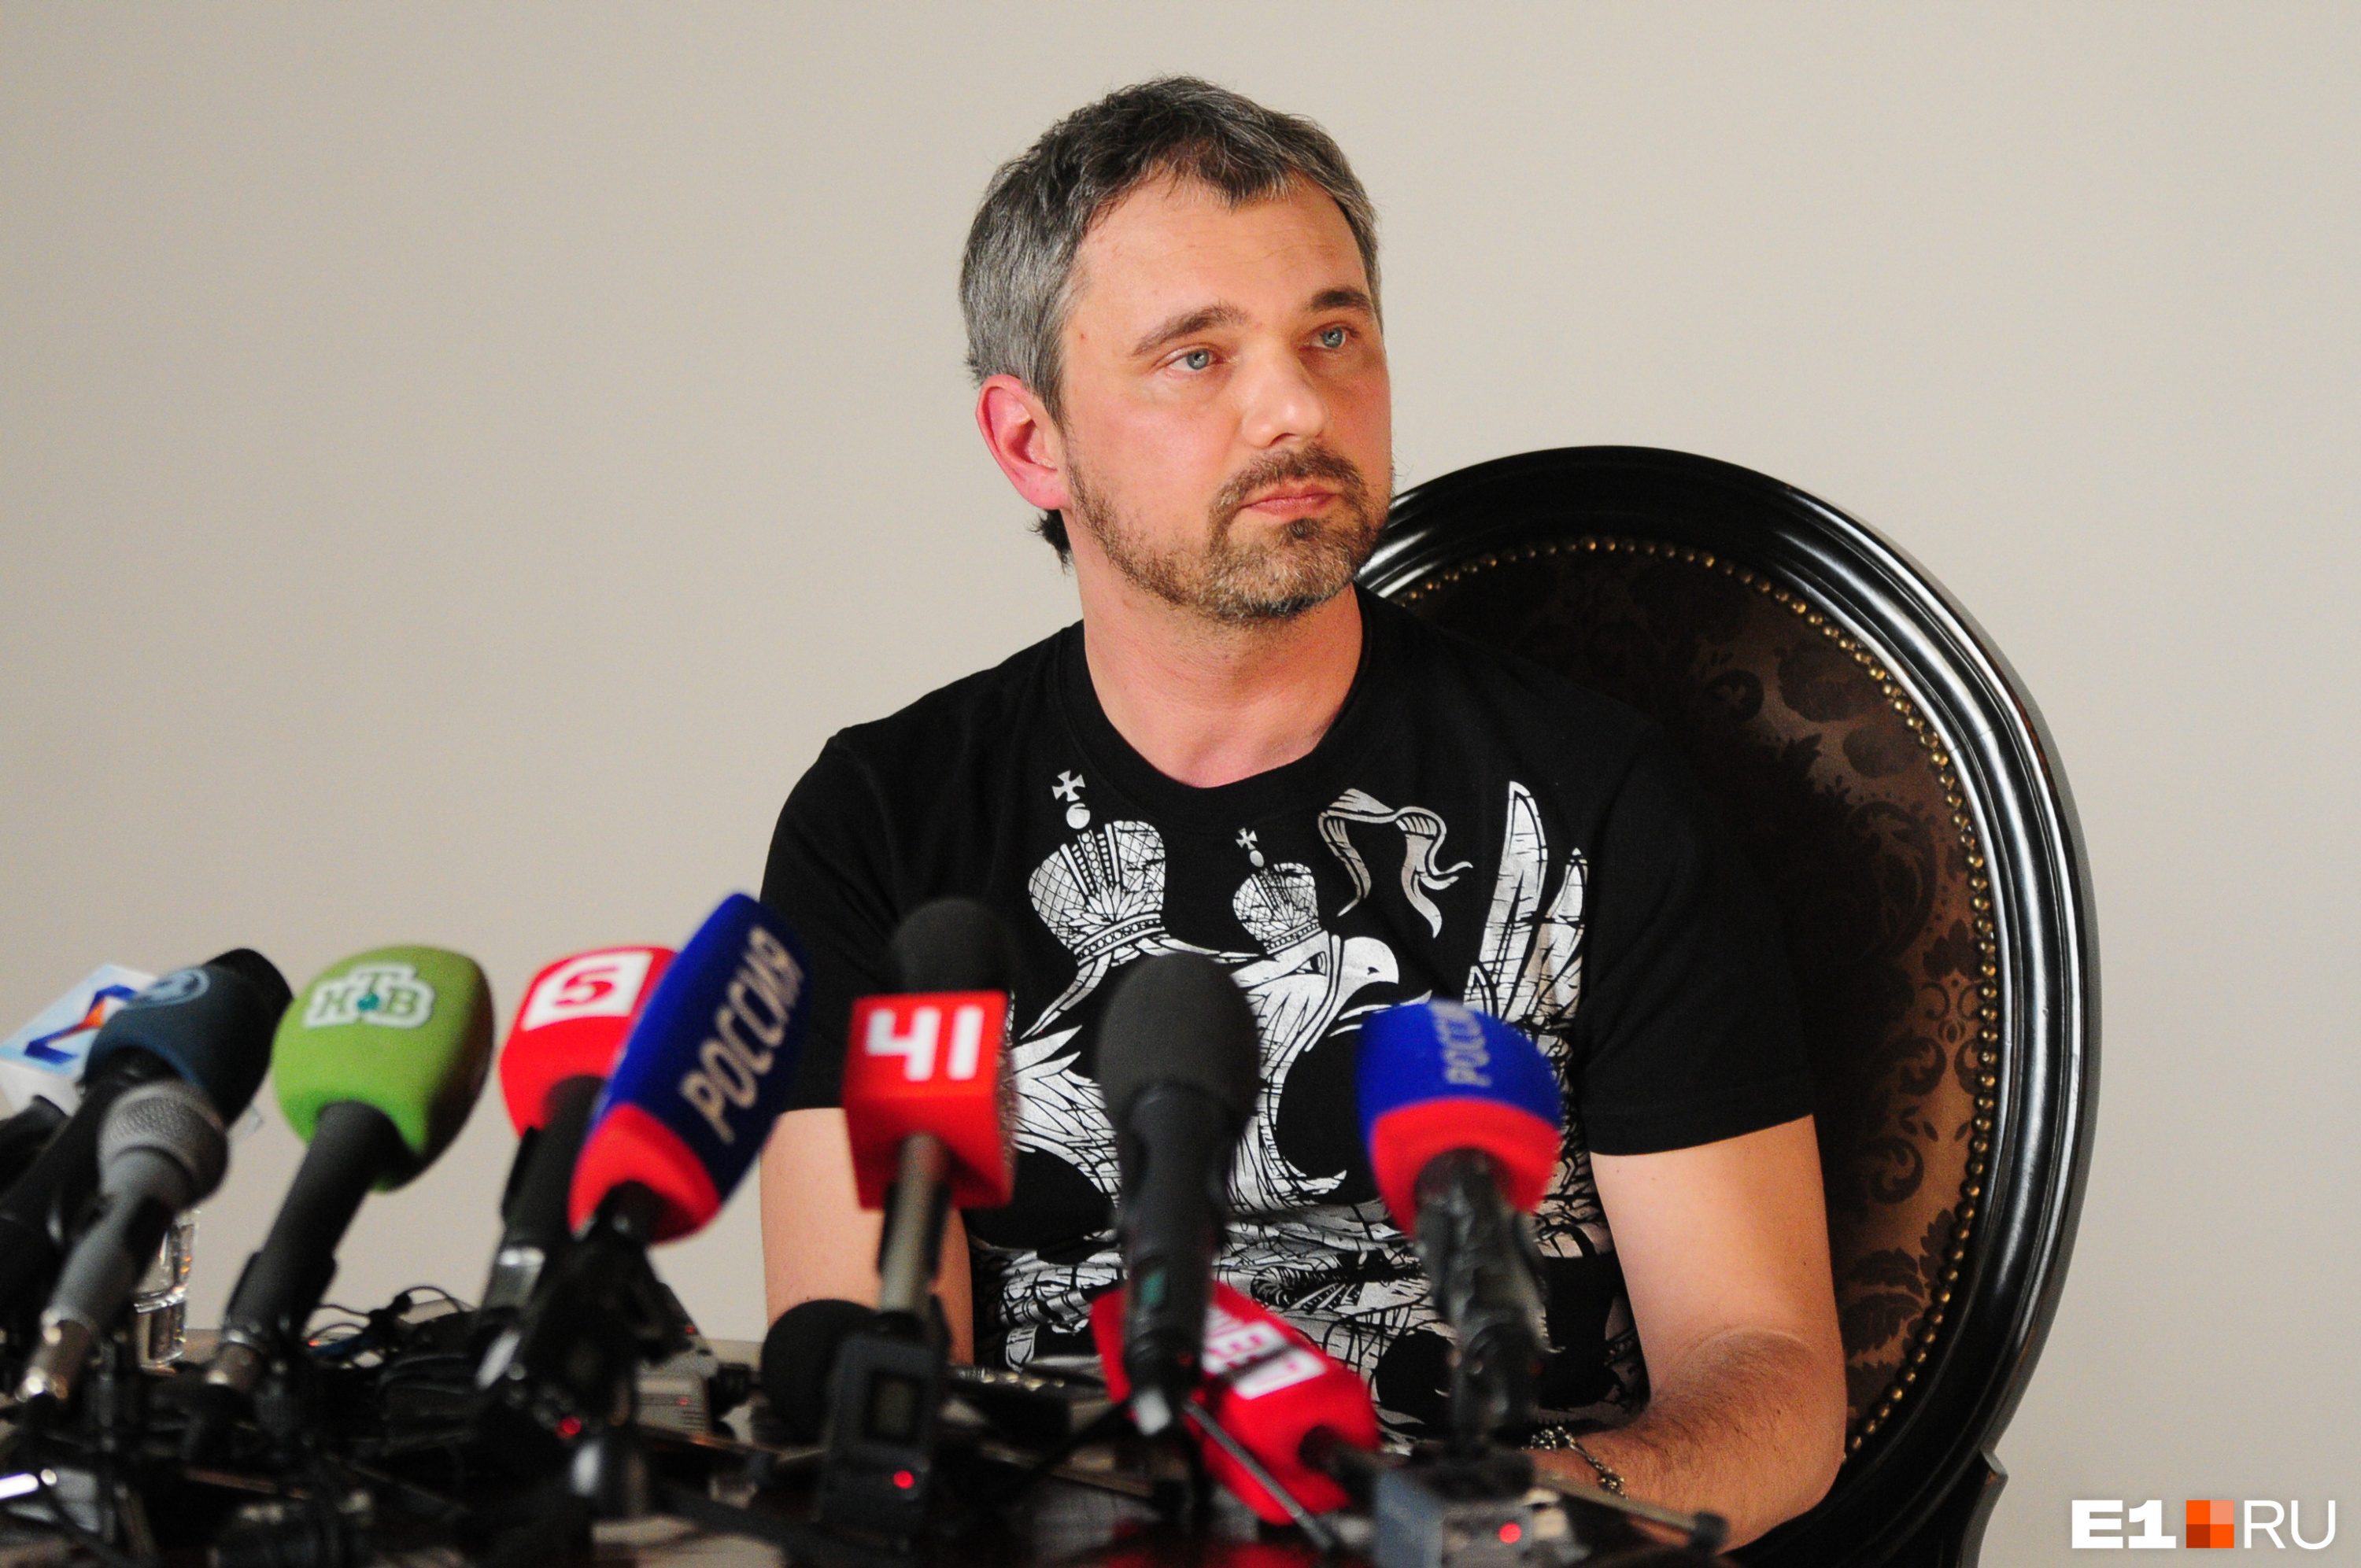 Дмитрий устроил пресс-конференцию, в ходе которой заявил, что не убивал Юлию